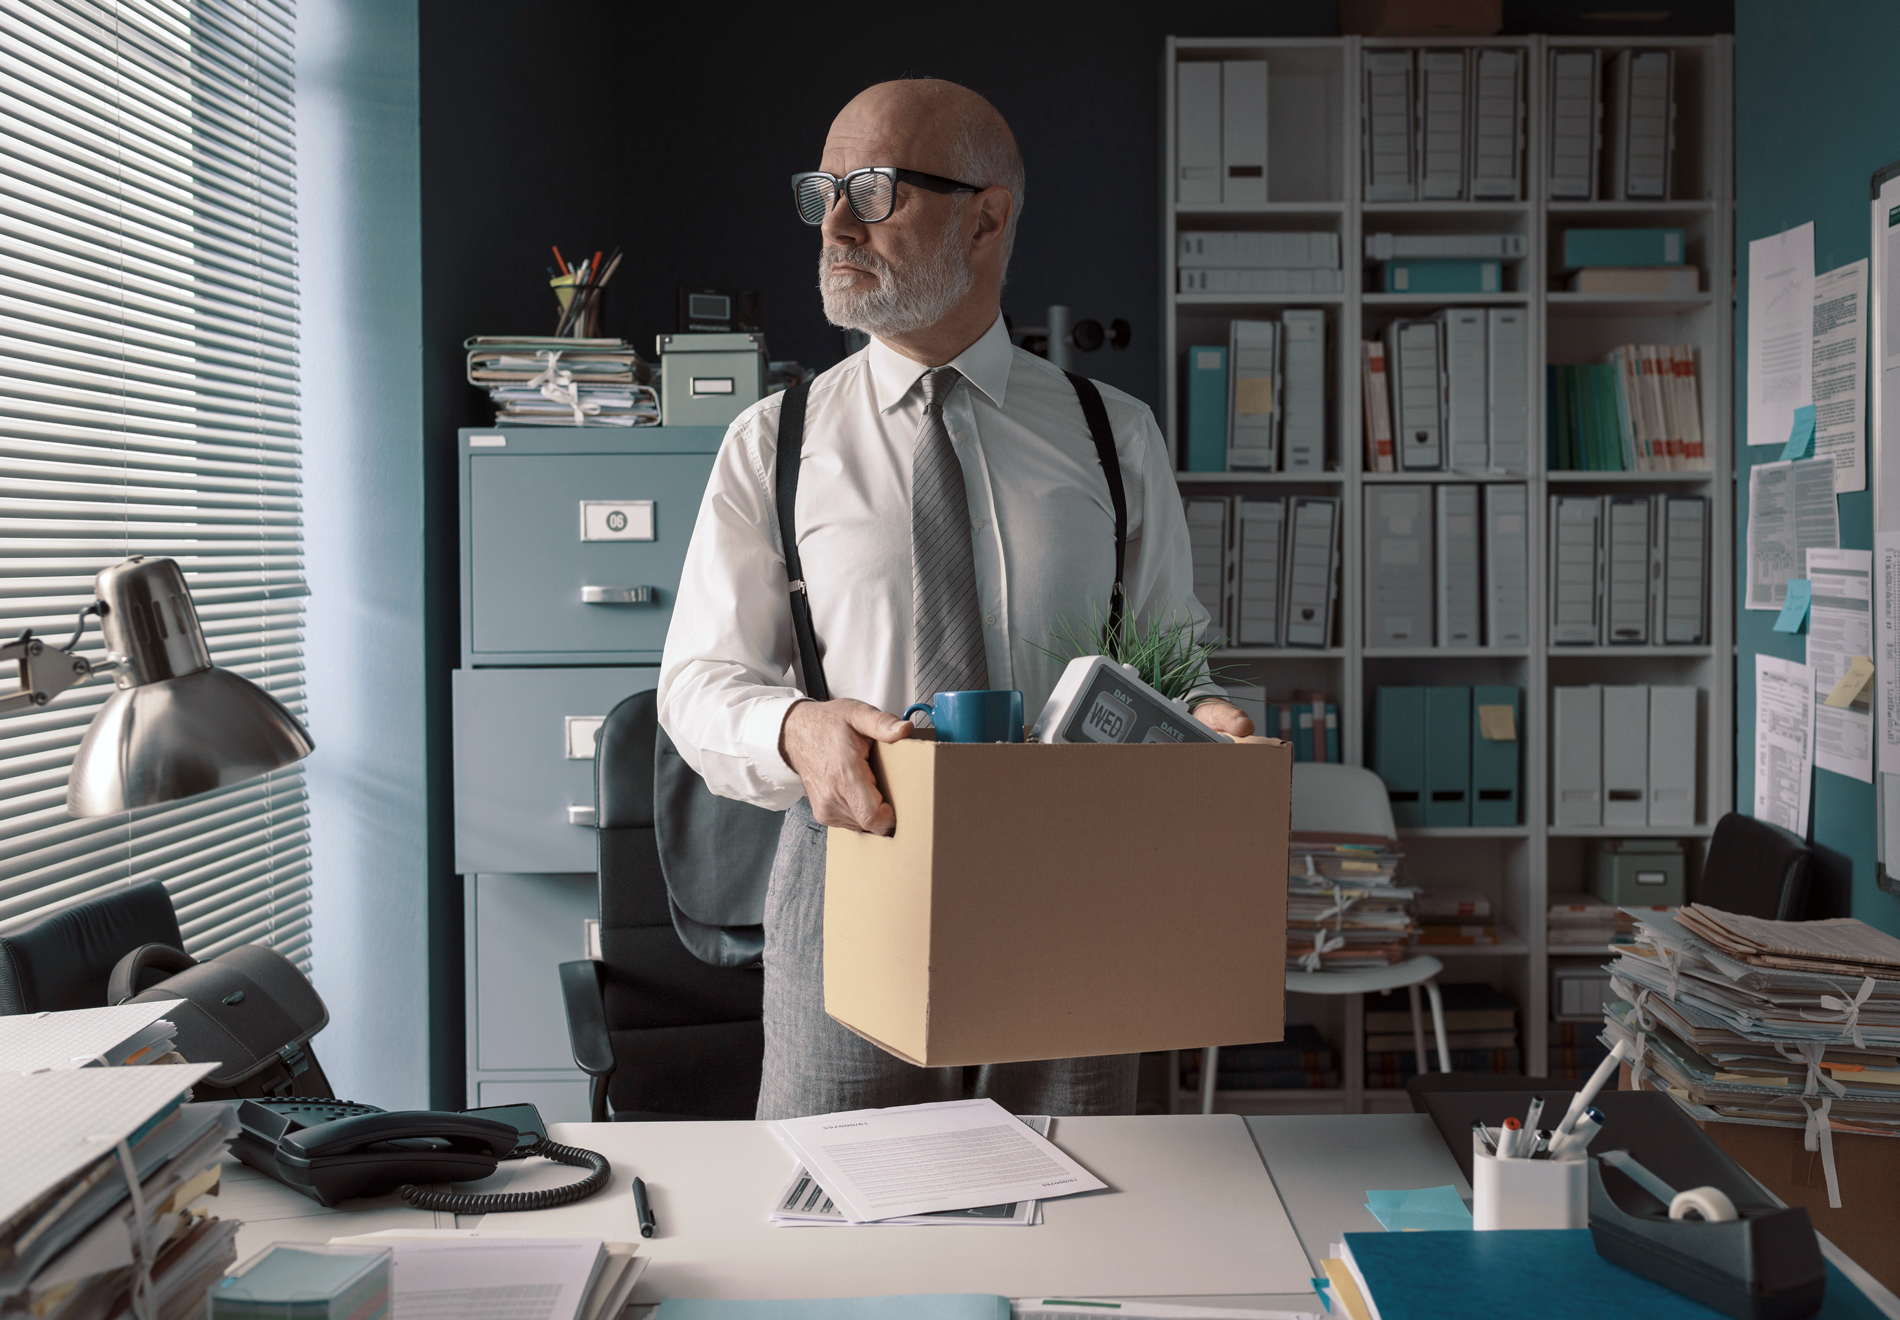 Un homme portant des lunettes, une chemise blanche, une cravate grise et des bretelles, debout derrière un bureau avec des stores à lamelles. Il soulève de son bureau un gros carton duquel on voit dépasser des objets, une tasse et un calendrier.